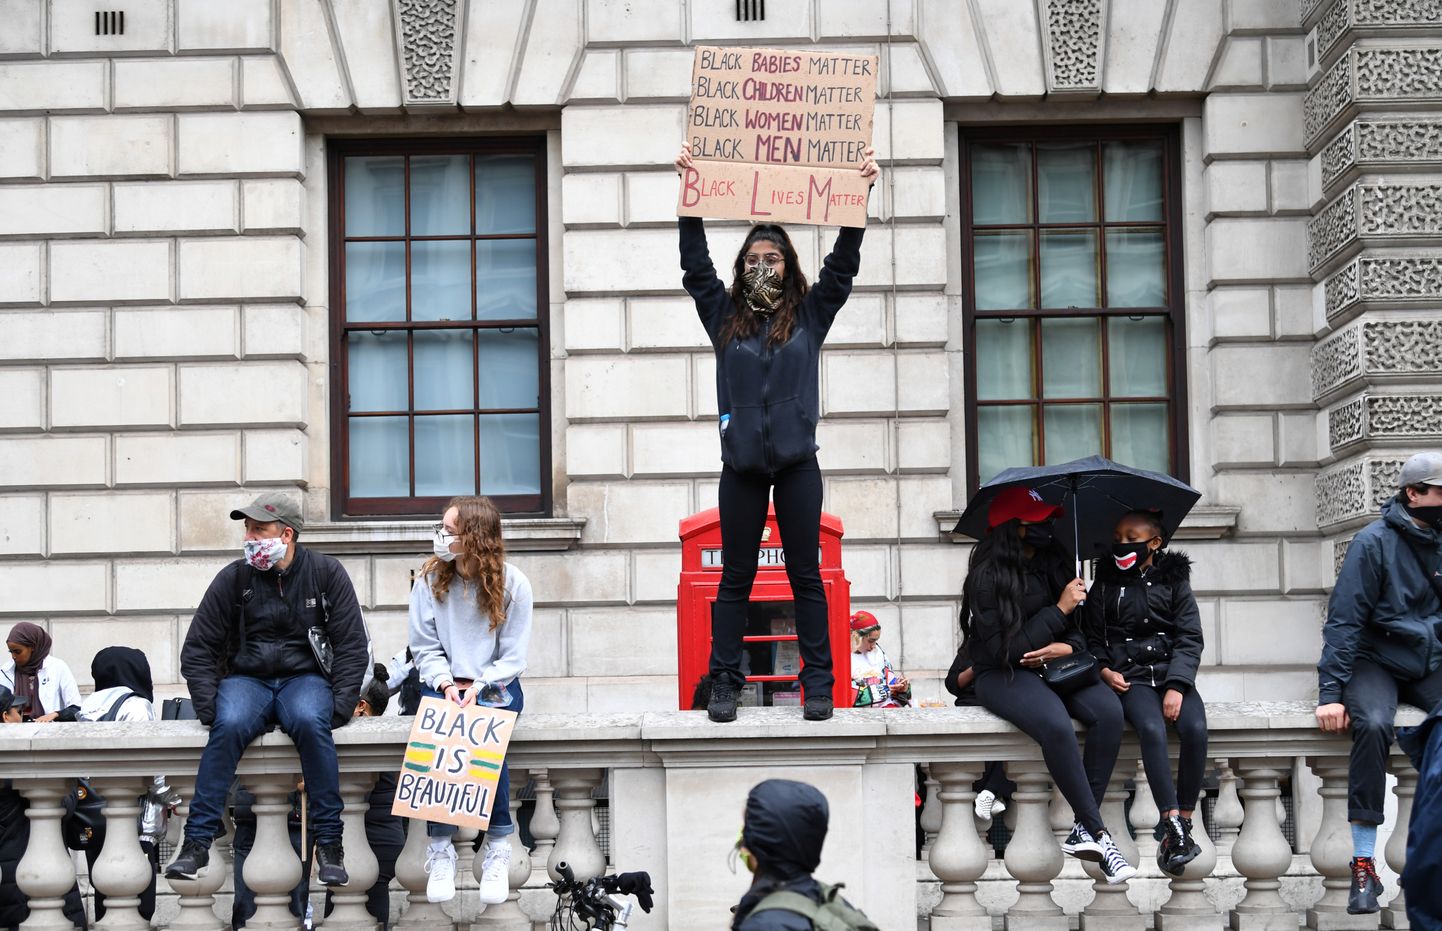 ЛОНДОН, 7 июн - РИА Новости, Наталья Копылова. Несколько тысяч человек собрались в воскресенье у посольства США в Лондоне в знак солидарности с движением Black lives matter.